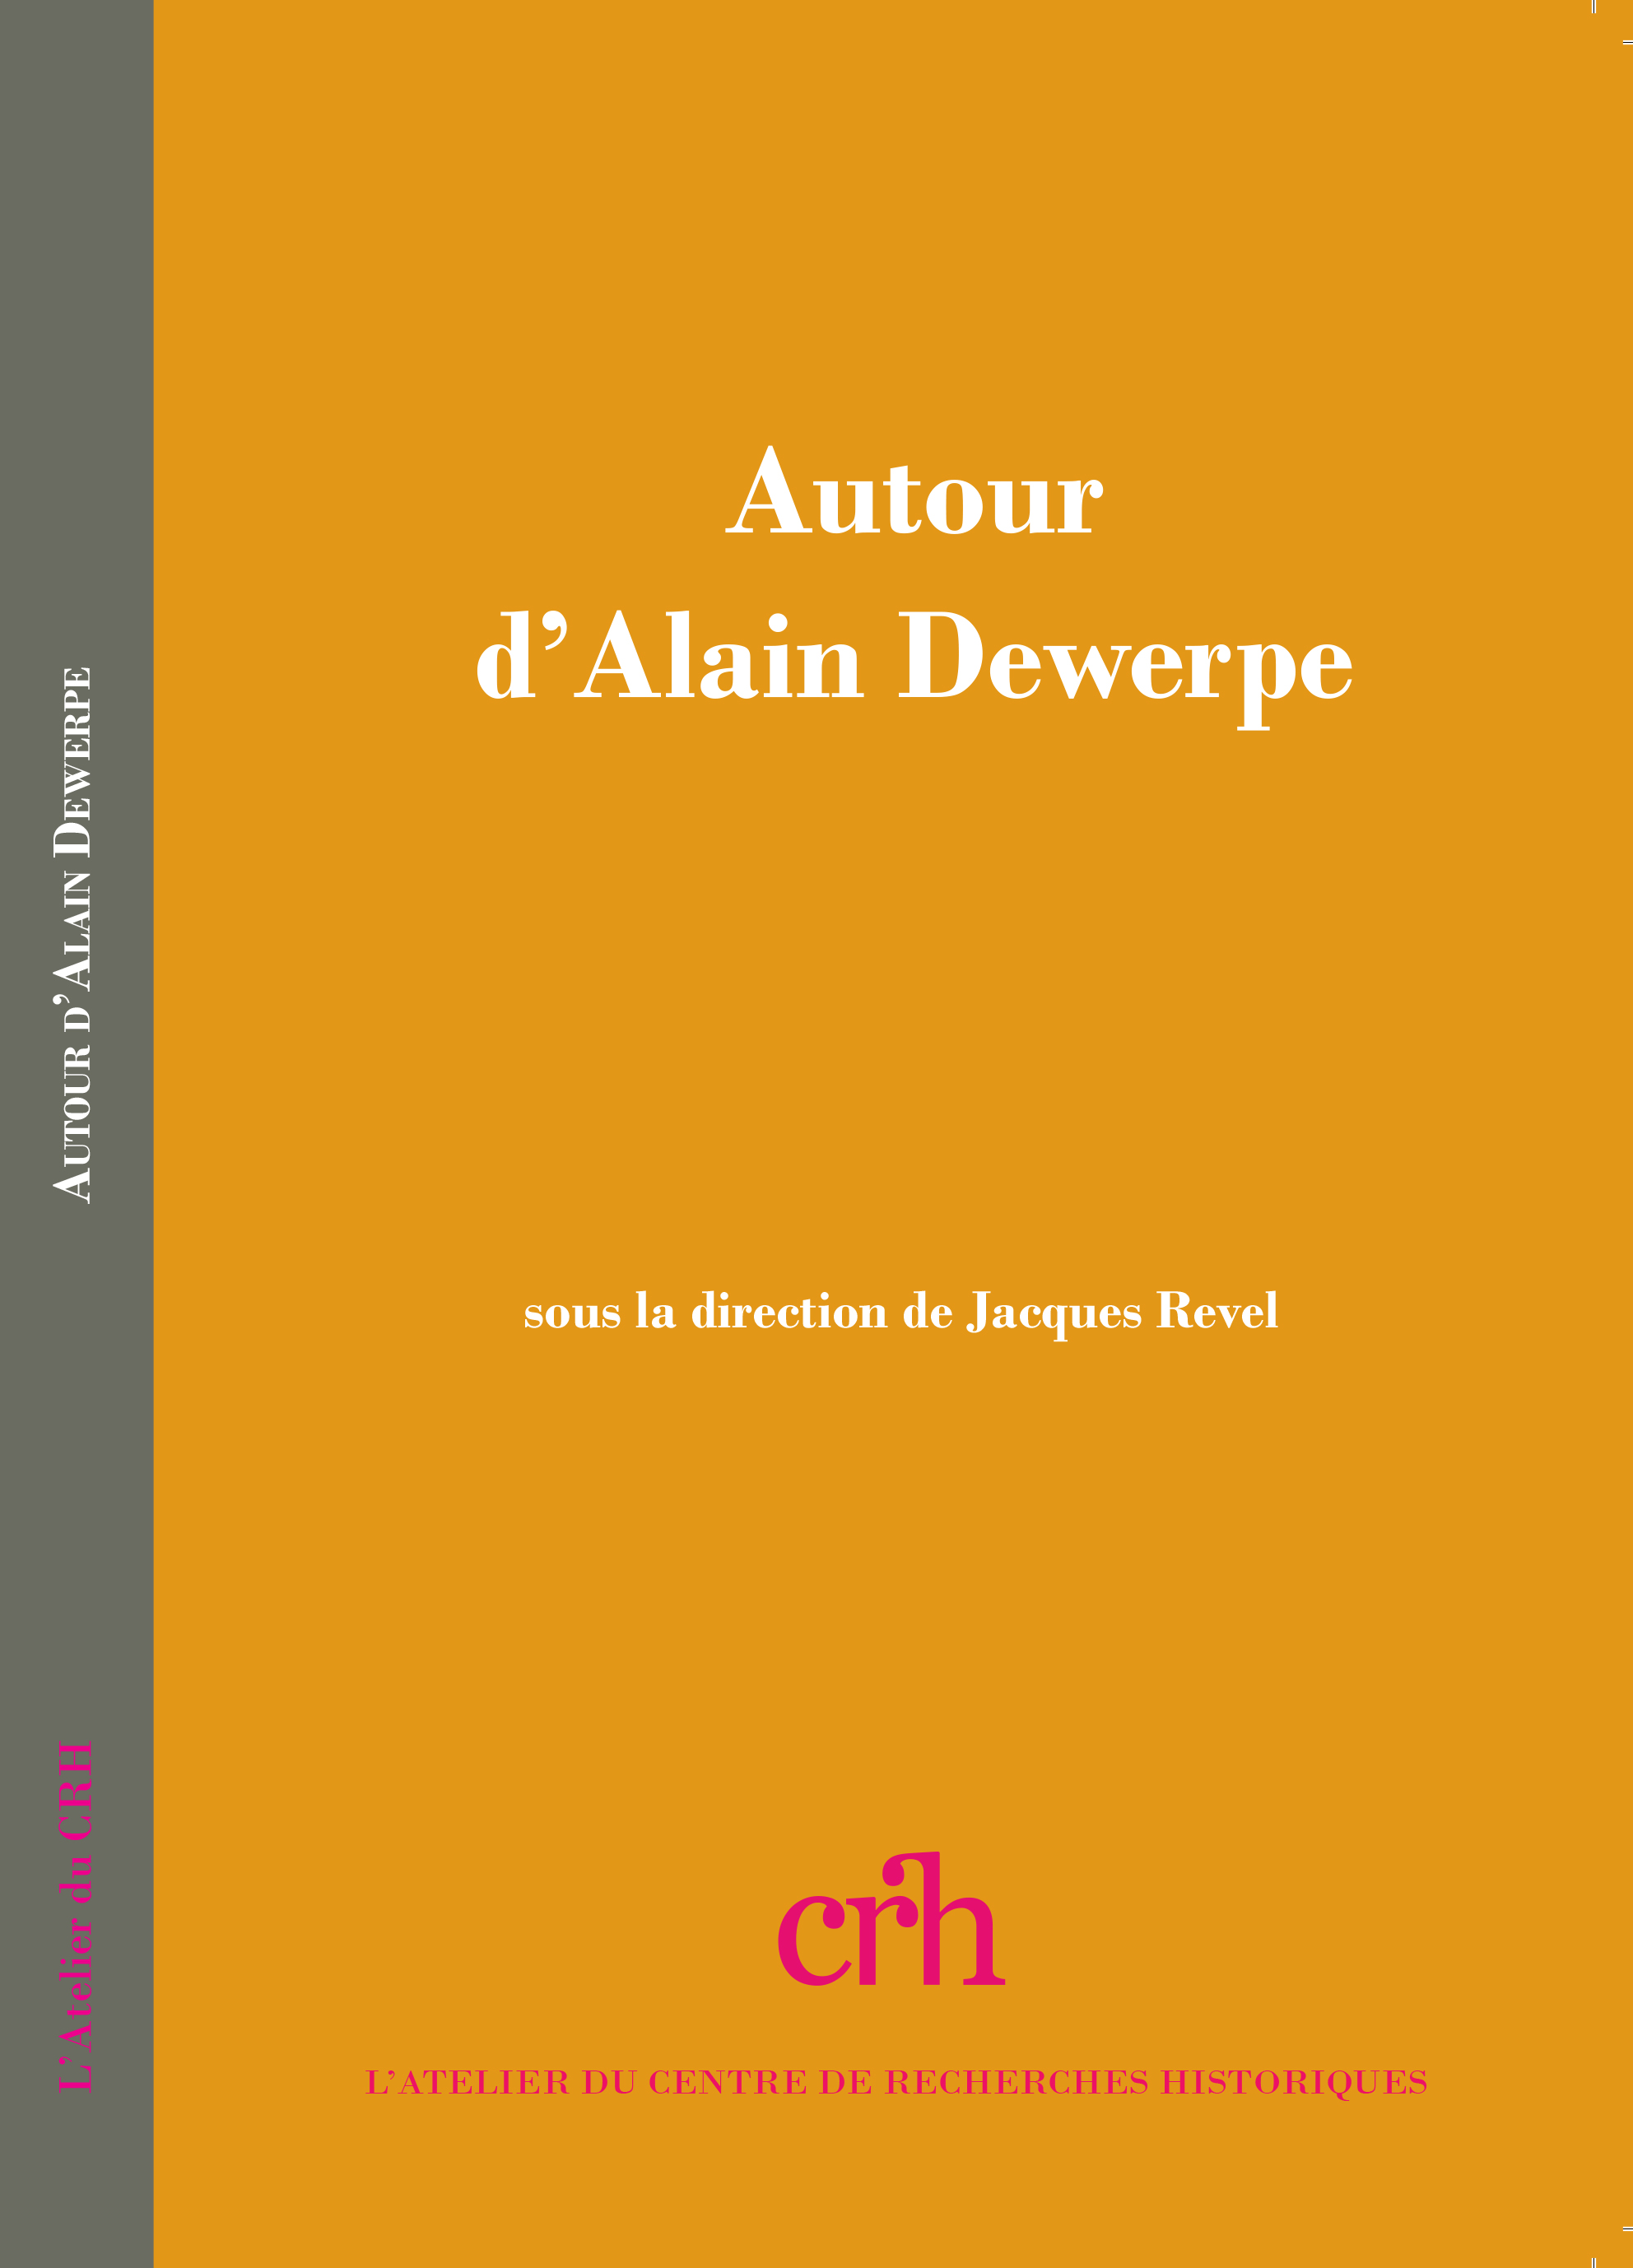 Autour d'Alain Dewerpe